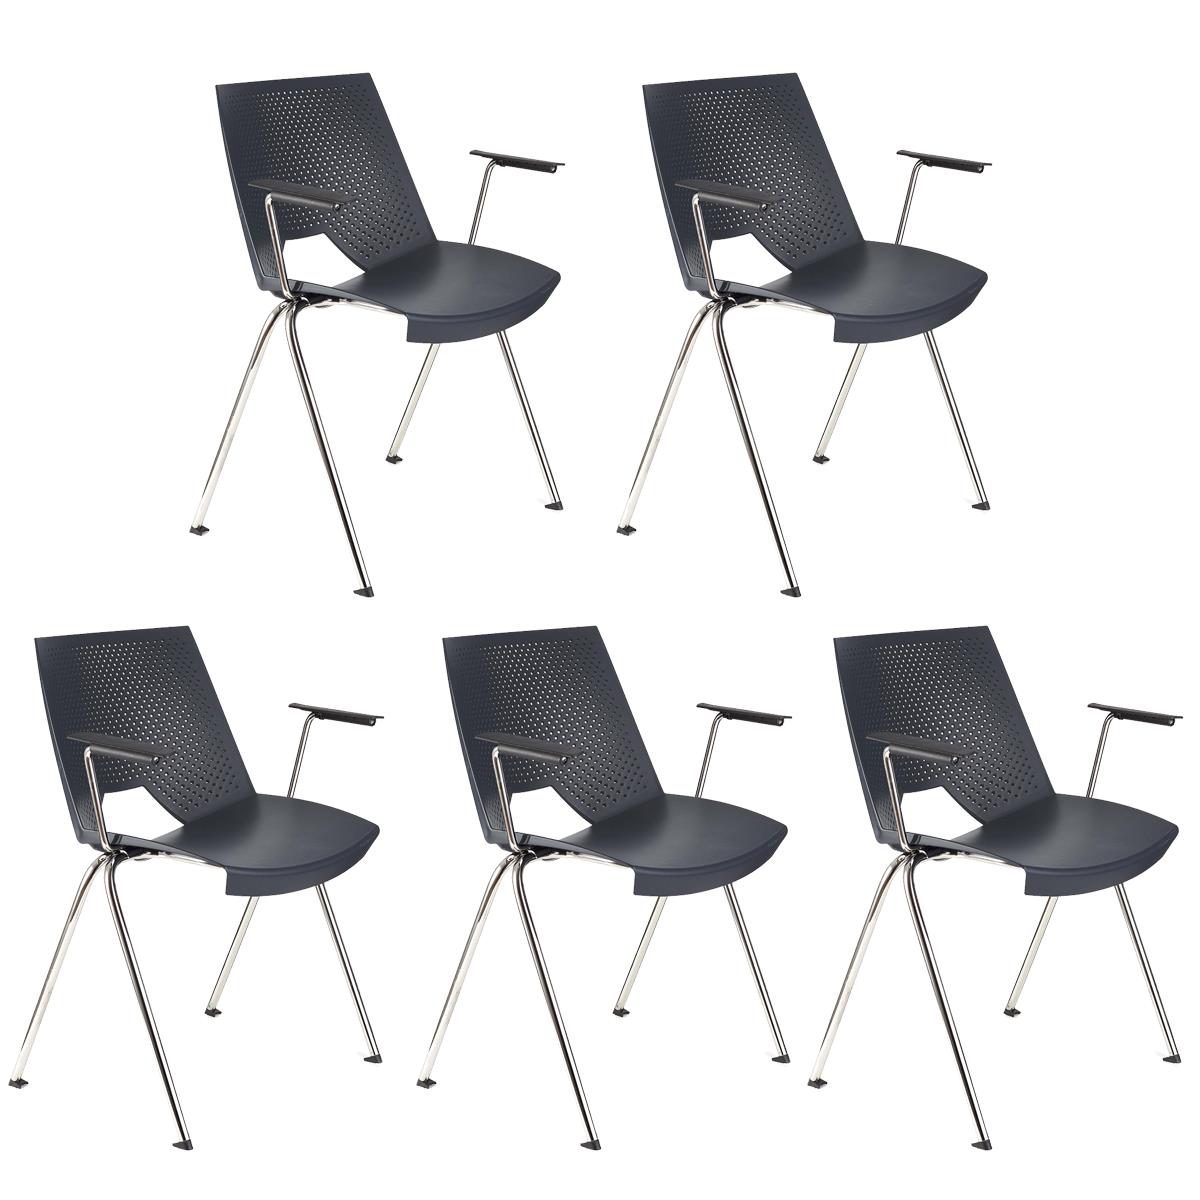 Lote 5 Cadeiras de Visita ENZO COM BRAÇOS, Confortável e Empilhável, Cor Azul